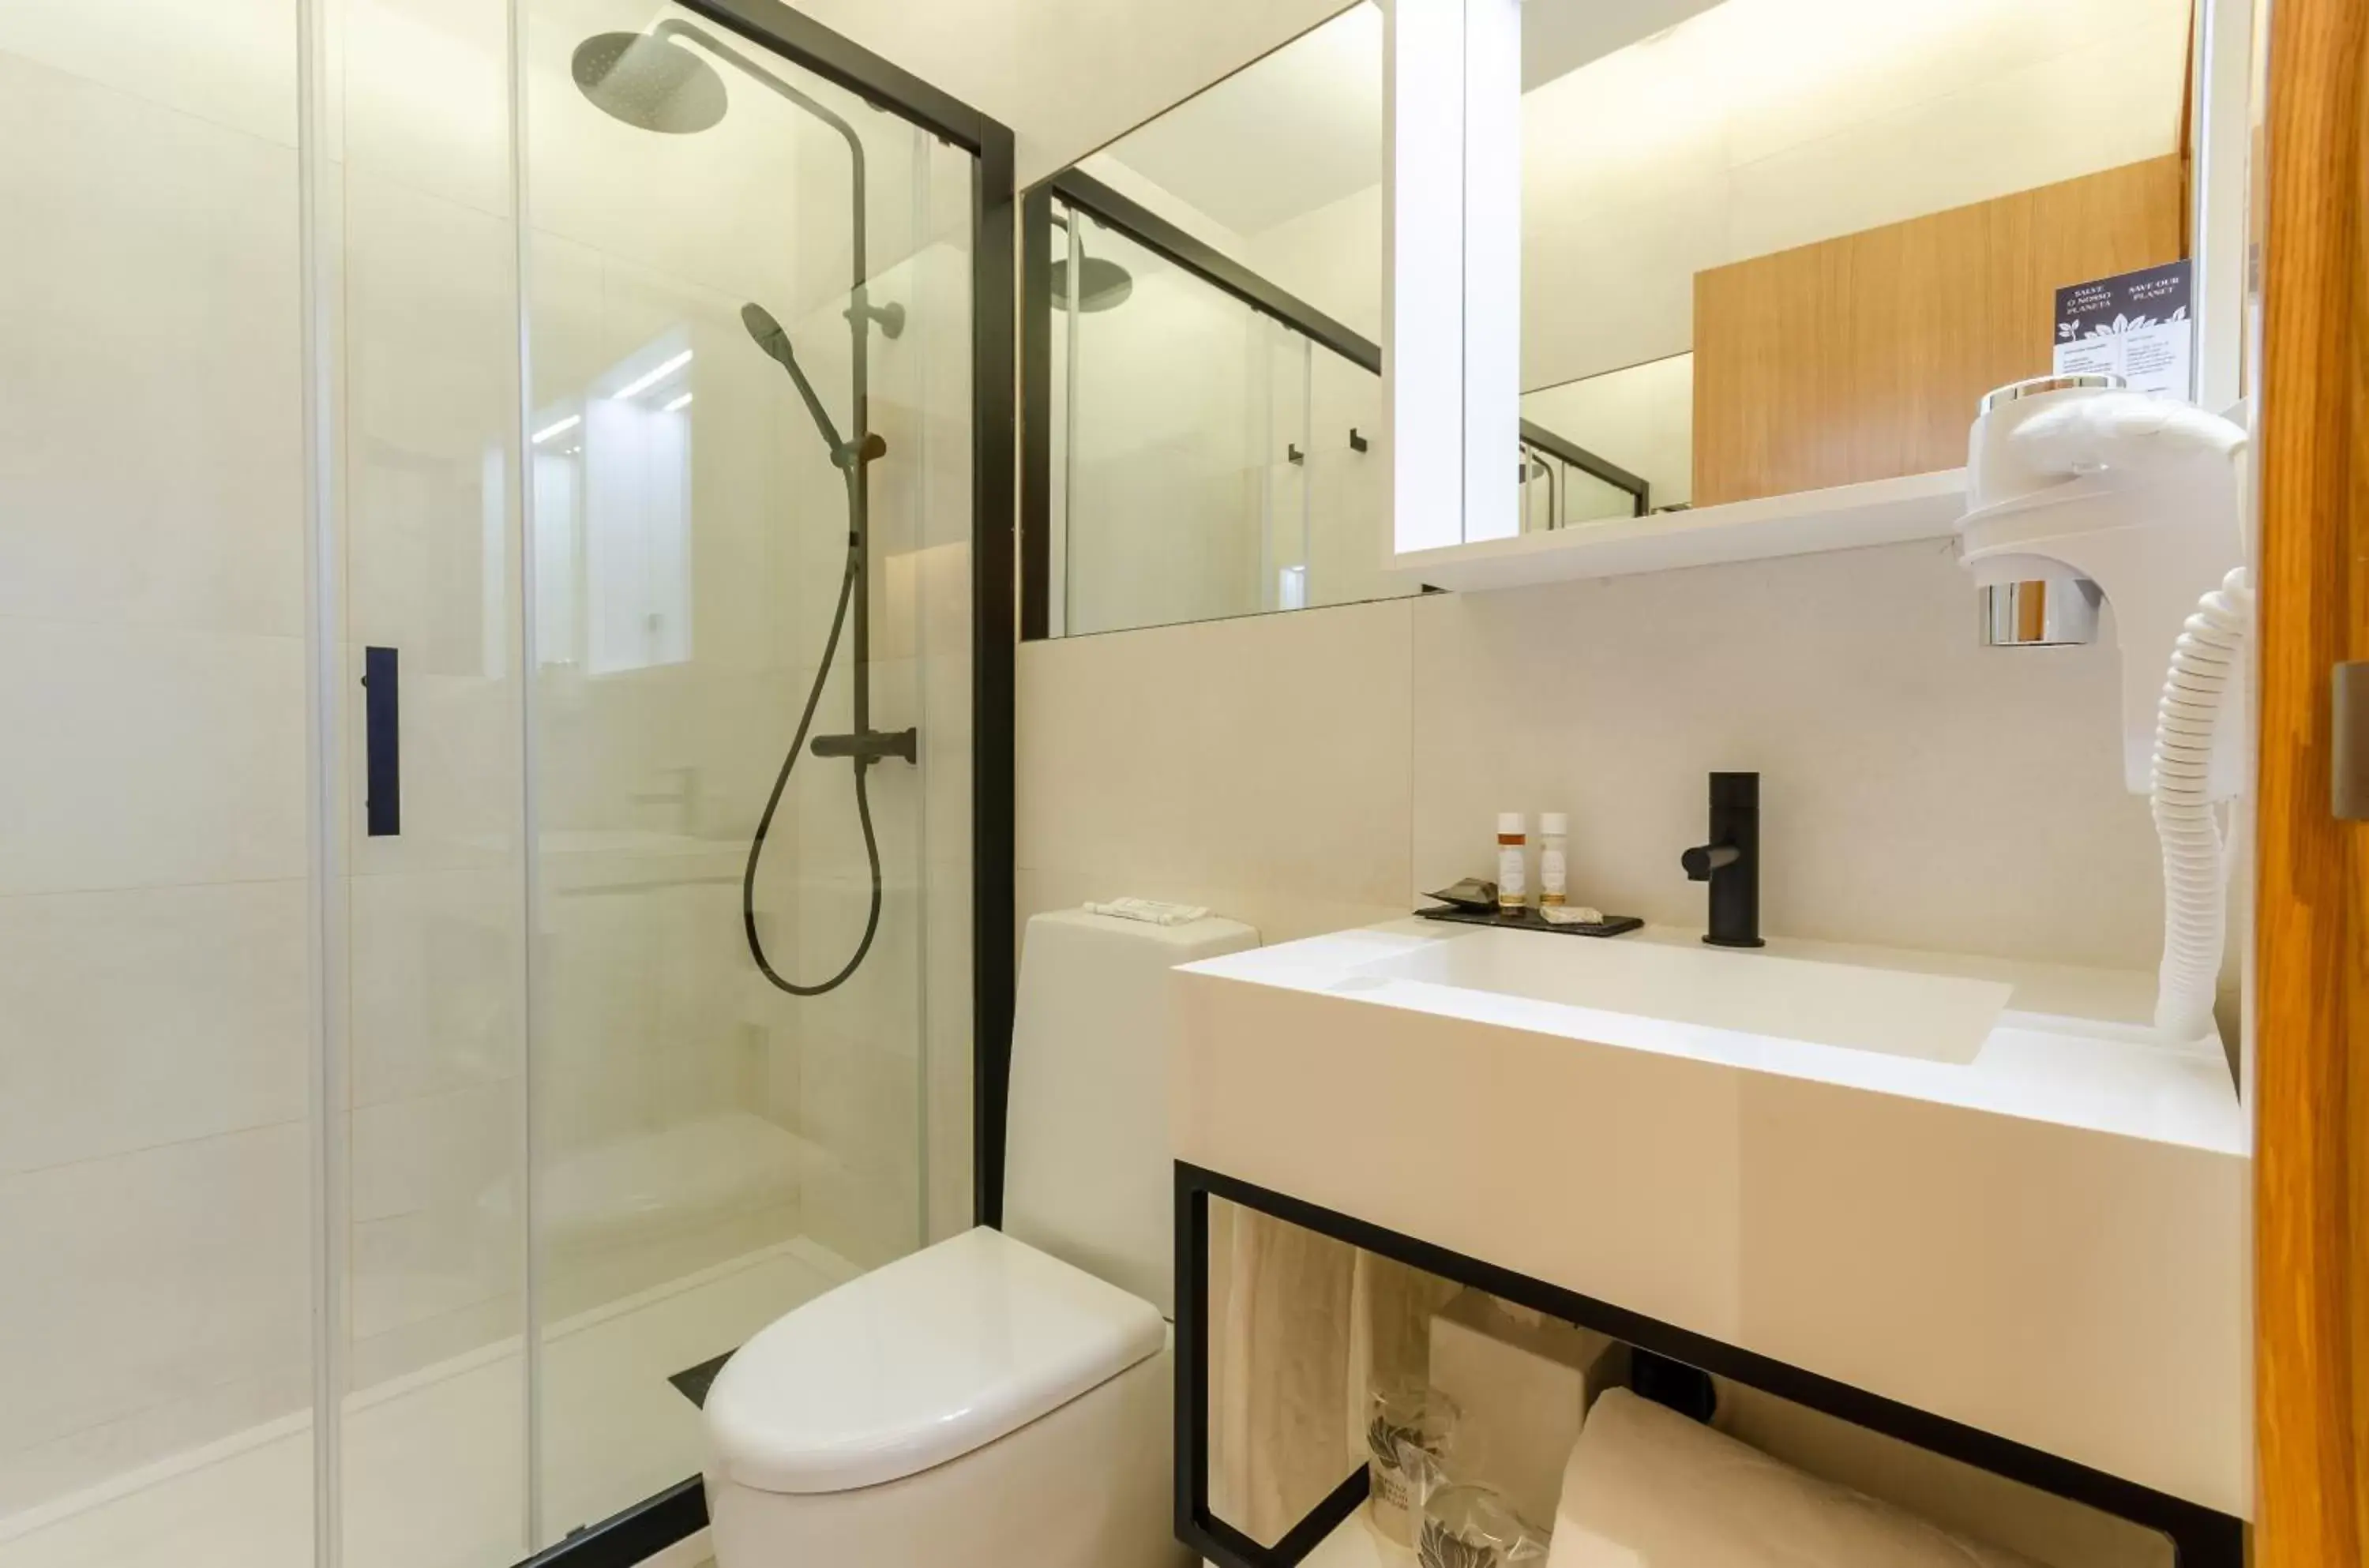 Bathroom in Rossio Plaza Hotel